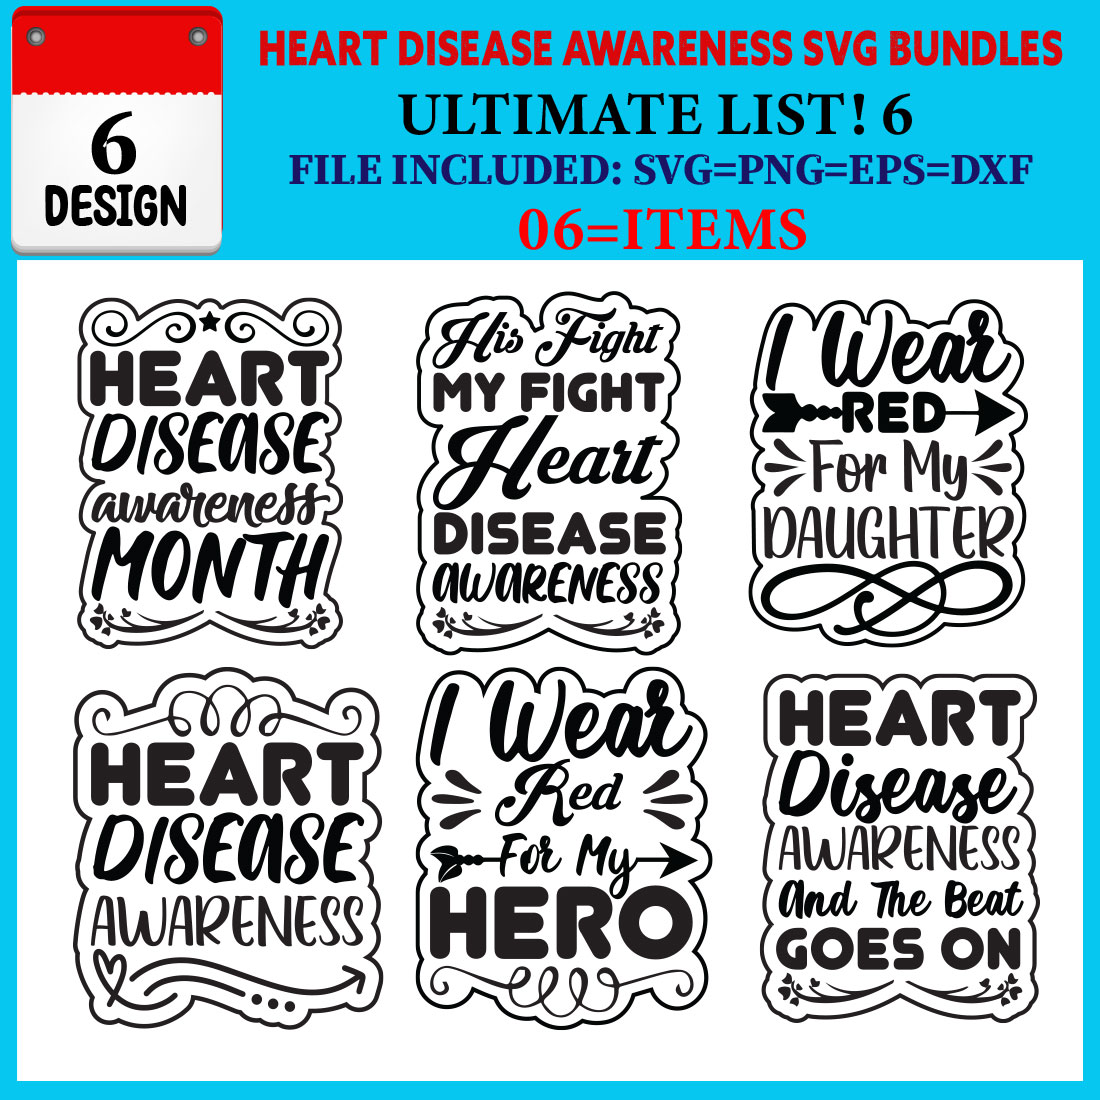 Heart Disease Awareness T-shirt Design Bundle Vol-01 cover image.